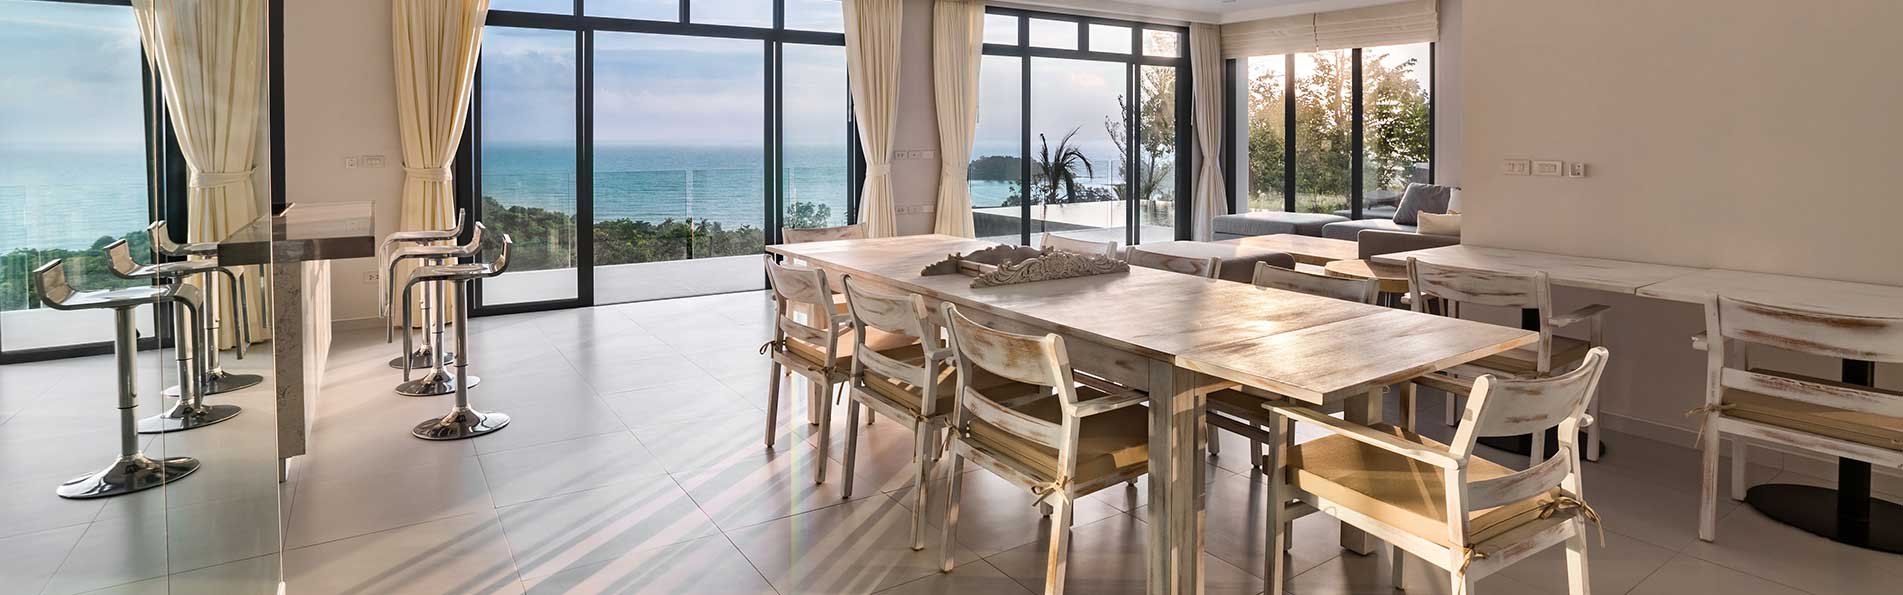 Villa salle à manger avec vue sur l'océan.